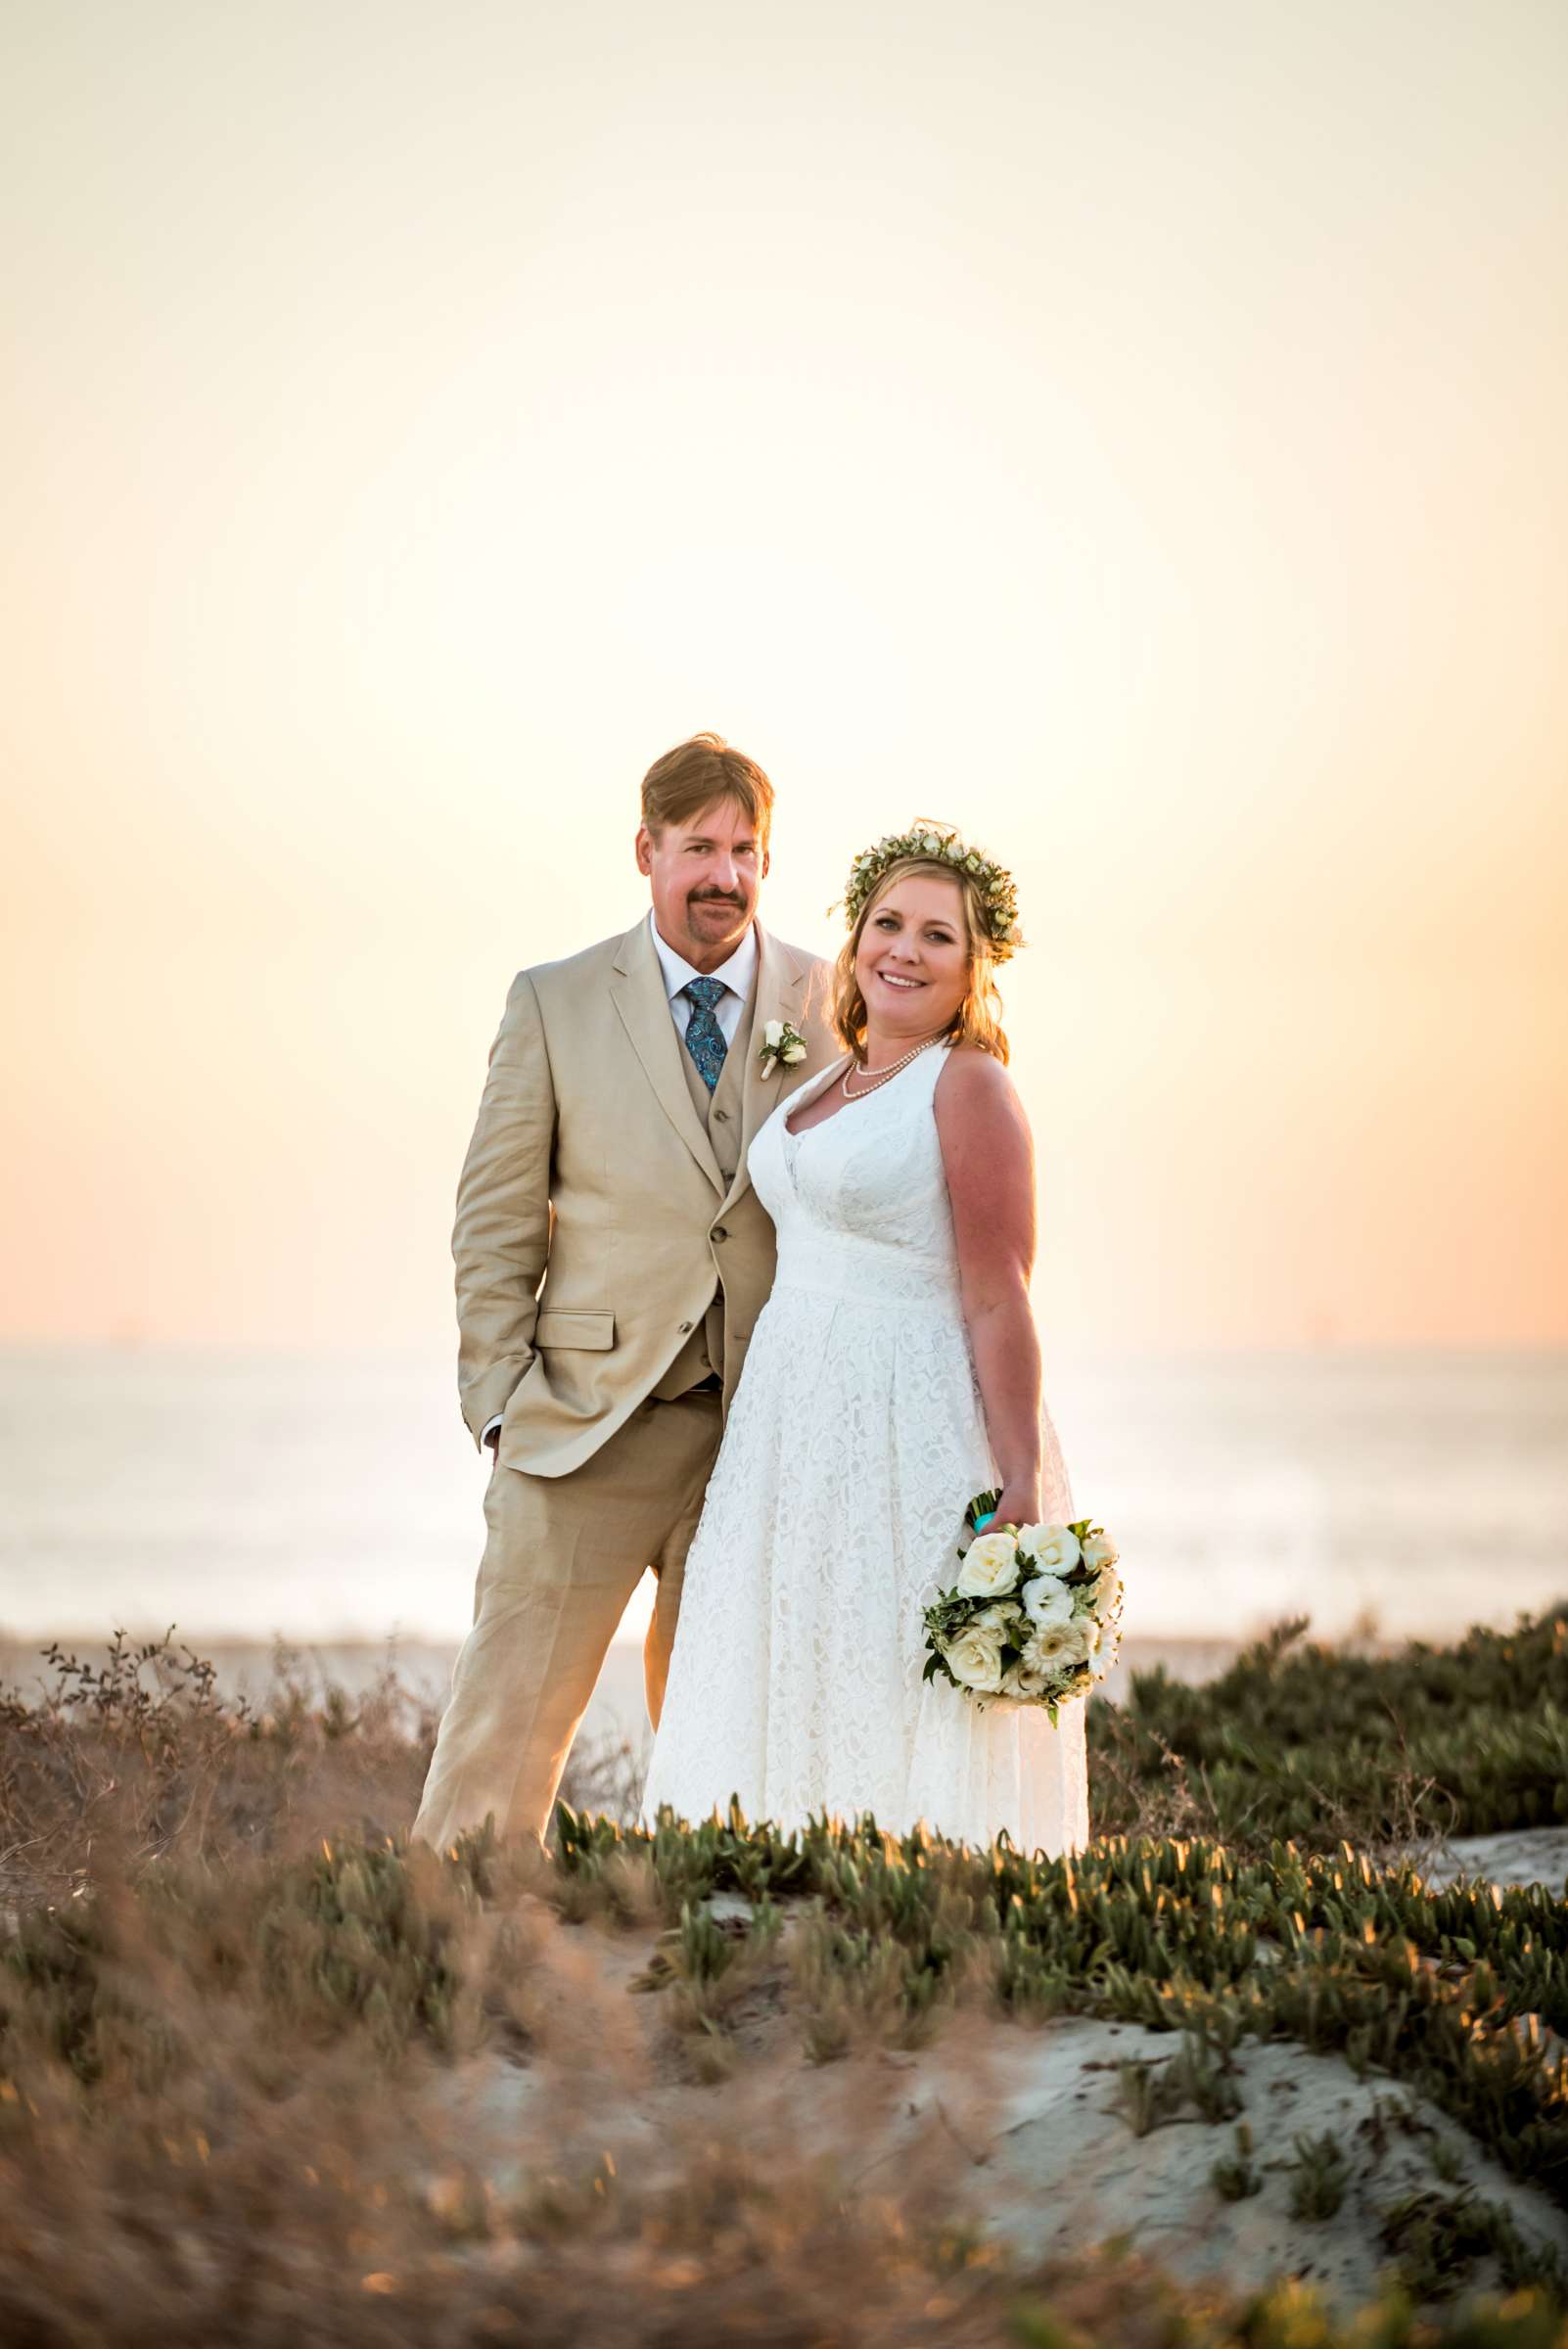 Hotel Del Coronado Wedding, Danielle and Glenn Wedding Photo #18 by True Photography